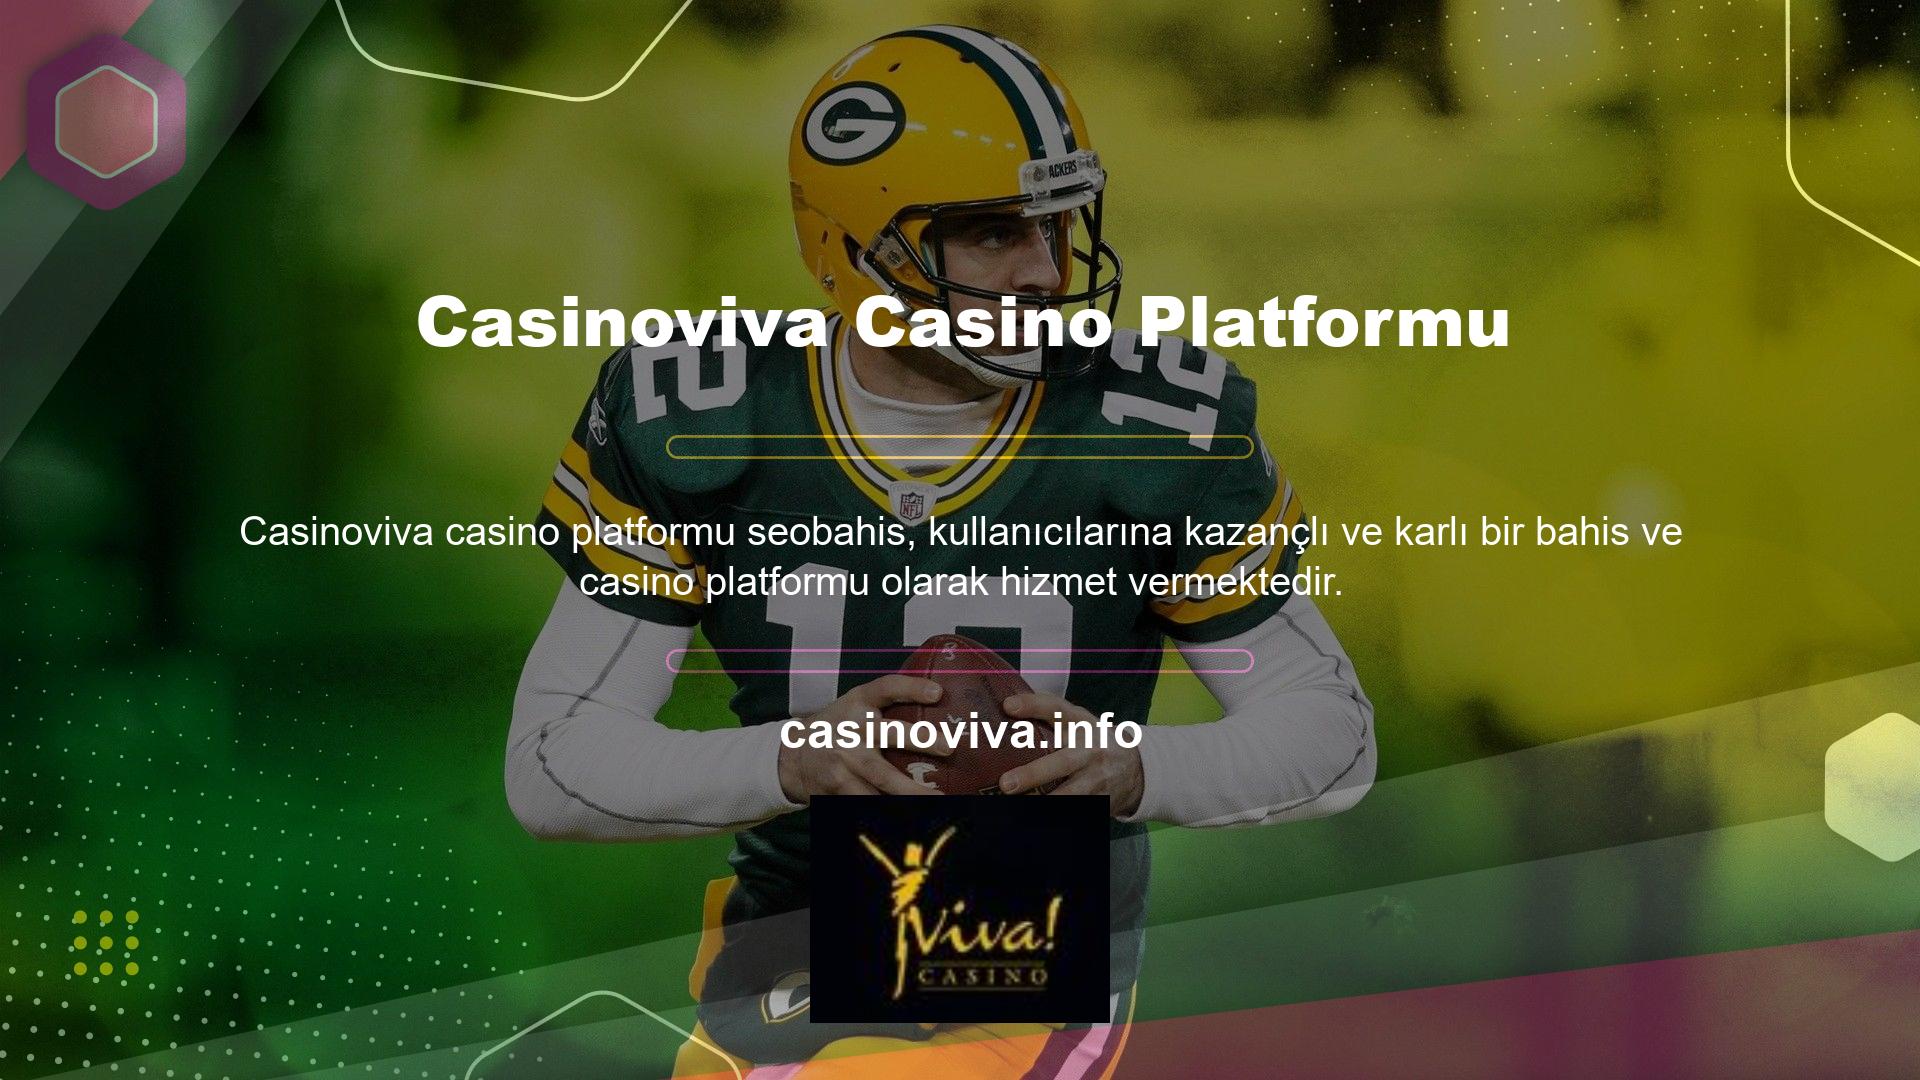 Güvenilir bir platform olarak pek çok kullanıcının ilgisini çeken Casinoviva de bu alanda ön sıralarda yer almaktadır